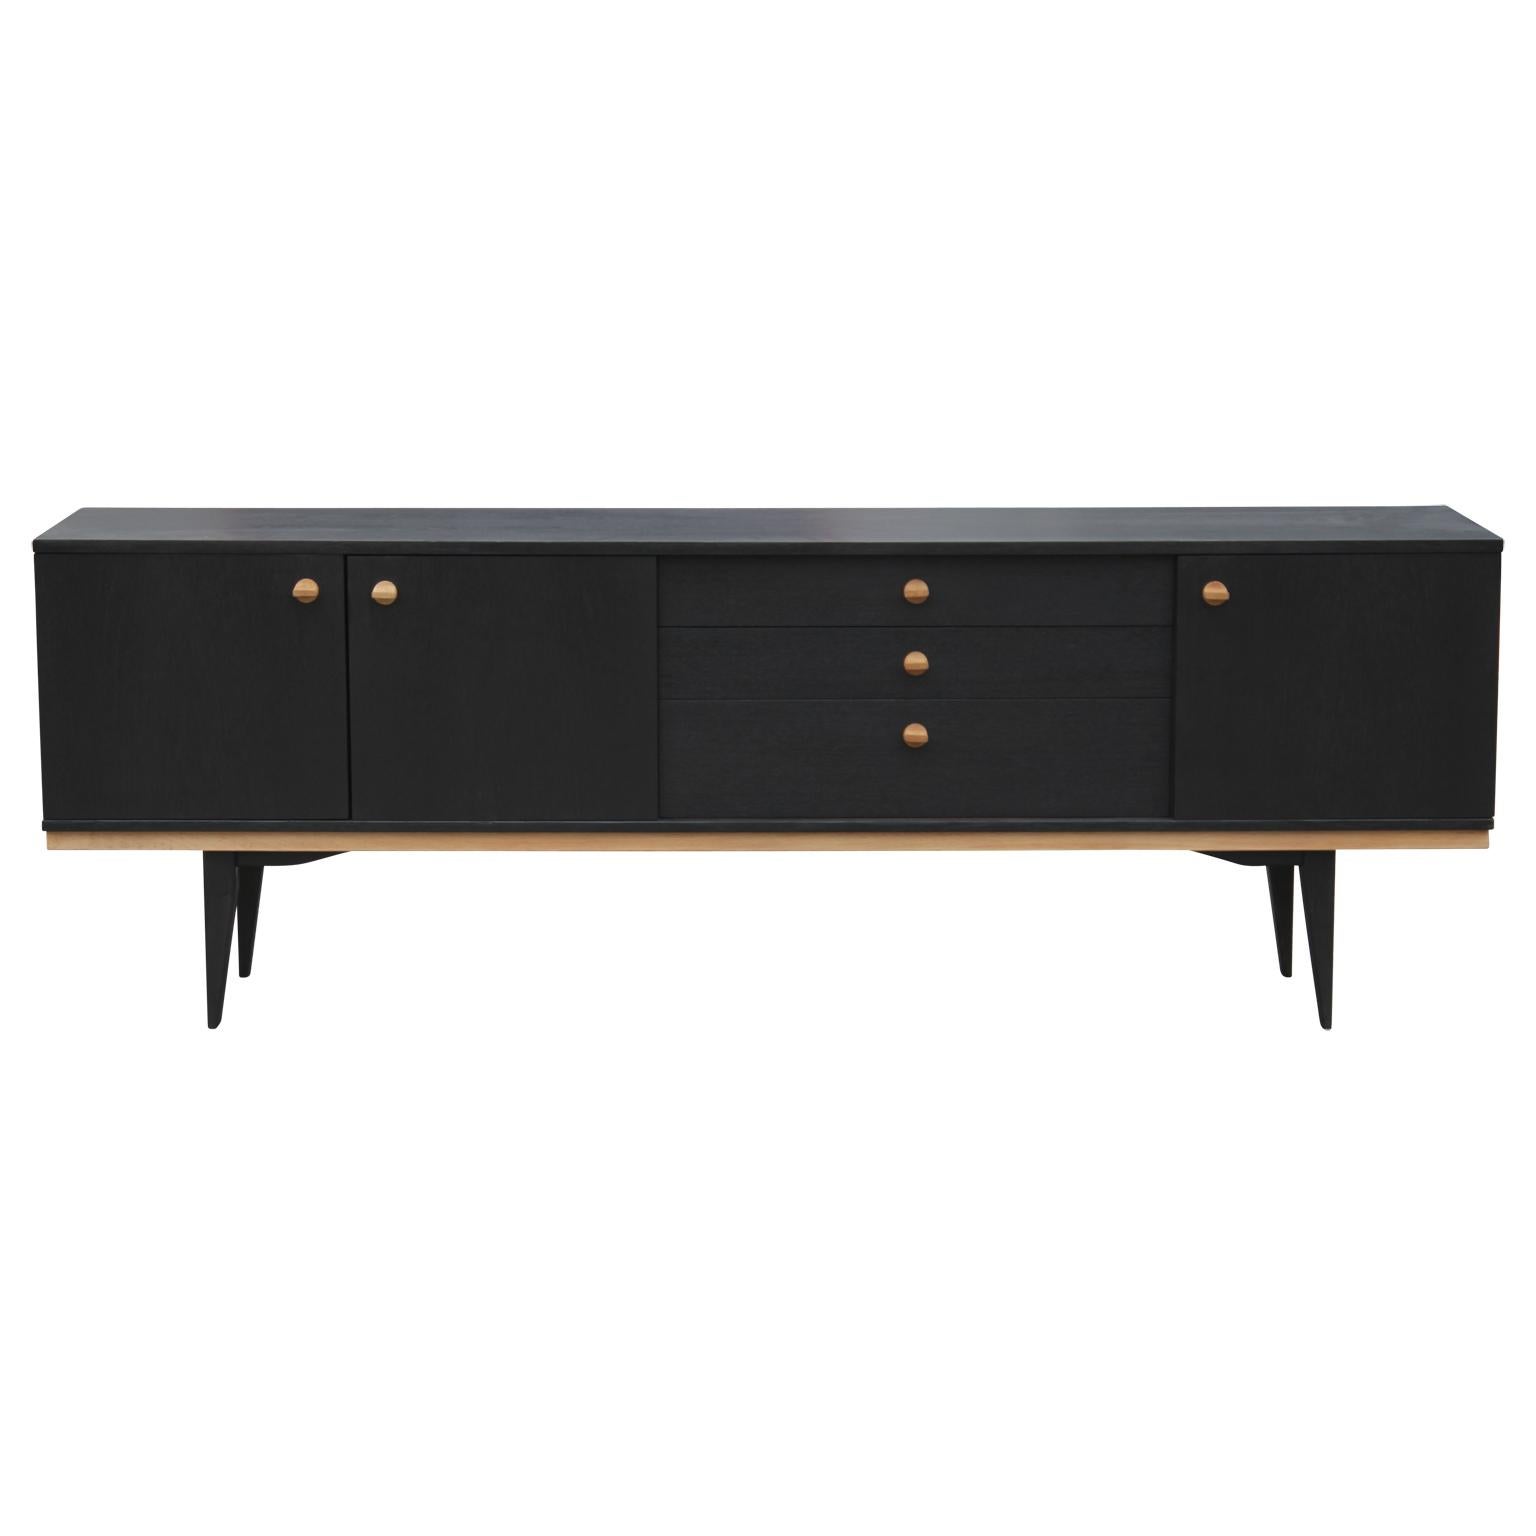 Hübsches modernes Teakholz-Credenza oder -Sideboard im dänischen Stil mit schöner zweifarbiger Oberfläche. Dieses Möbelstück verfügt über zwei offene Schränke und drei Schubladen in der Mitte.